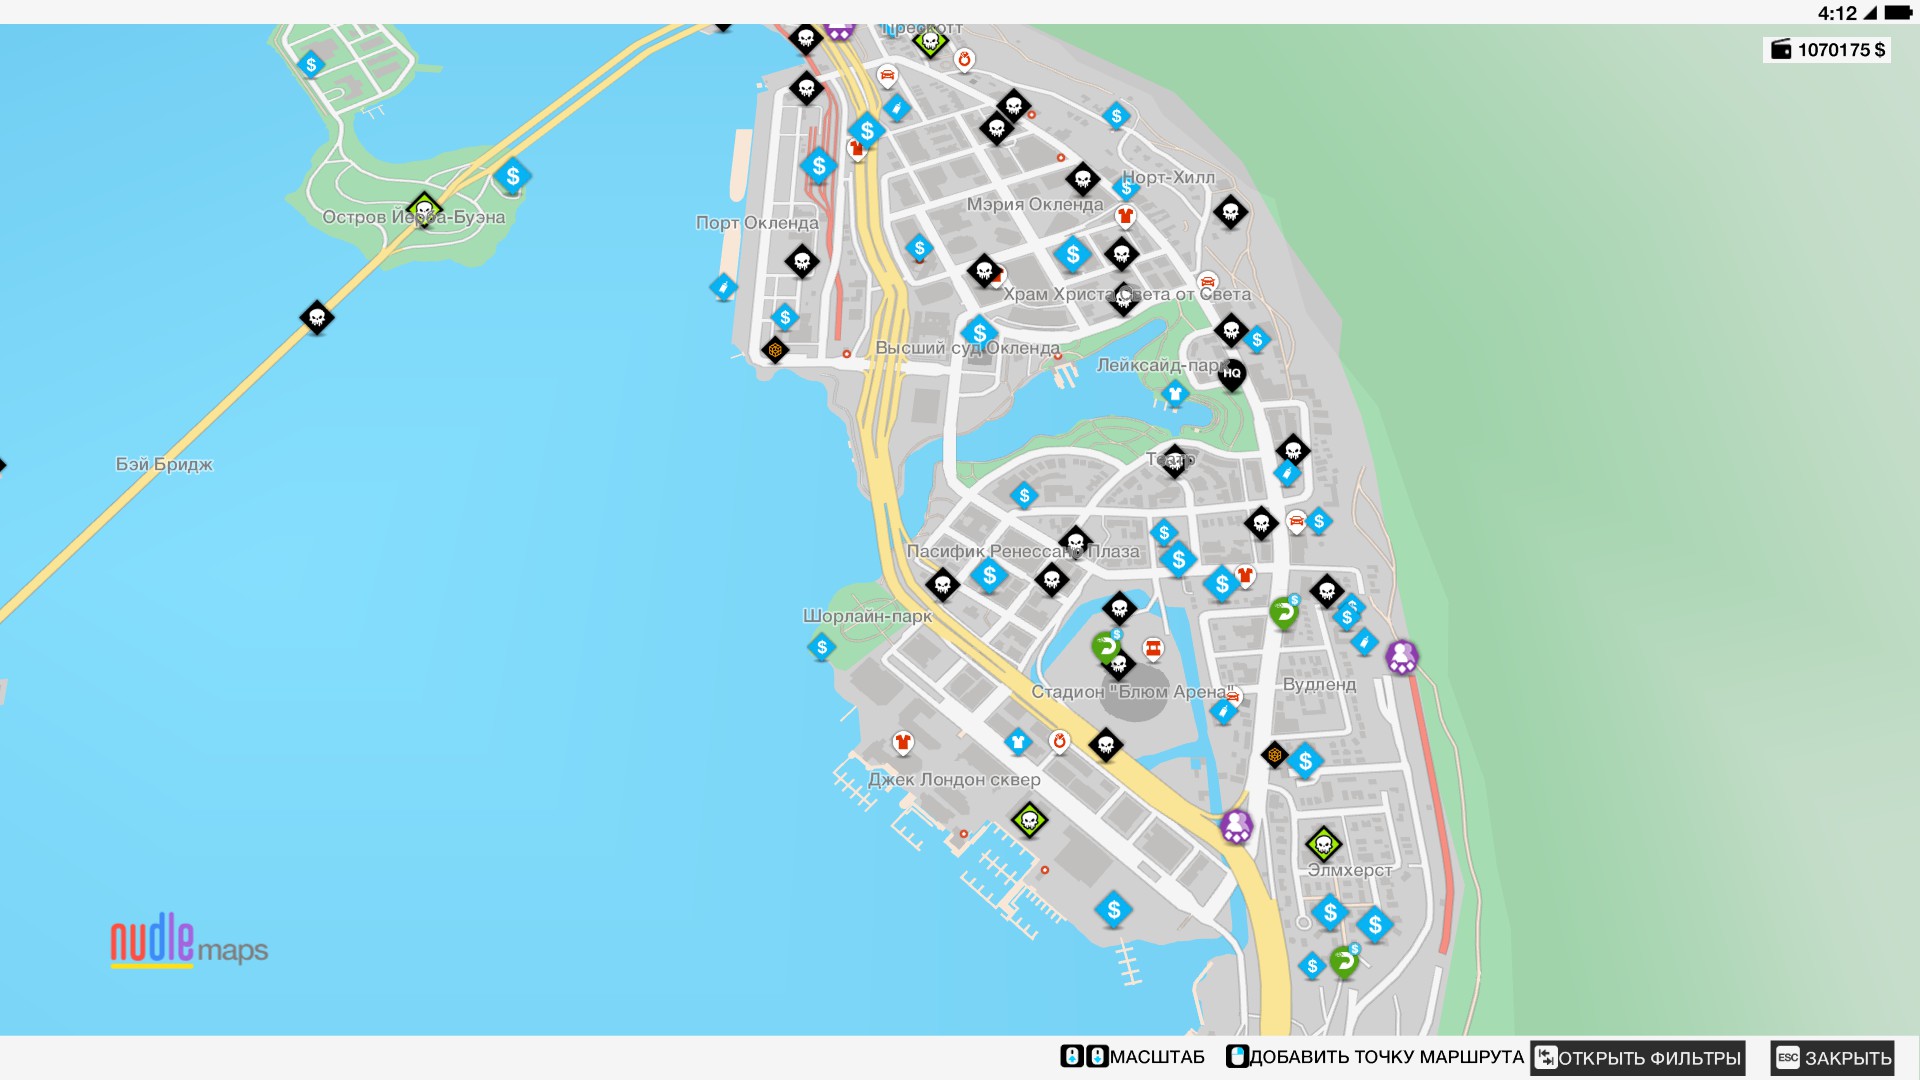 Карта очков исследований в WatchDogs 2